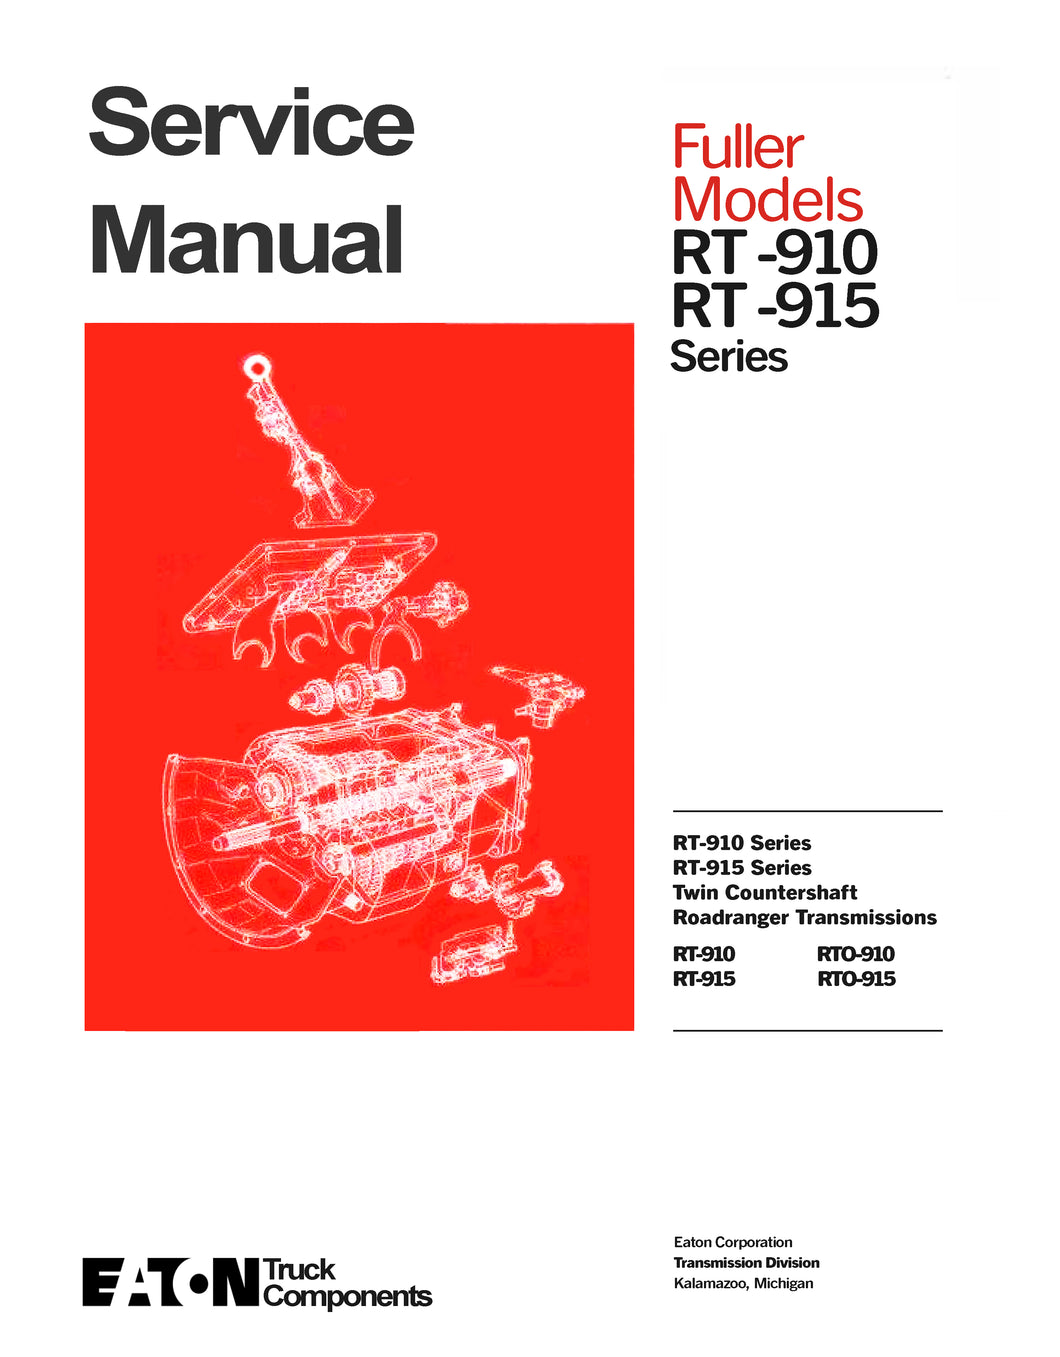 Eaton road ranger service manual